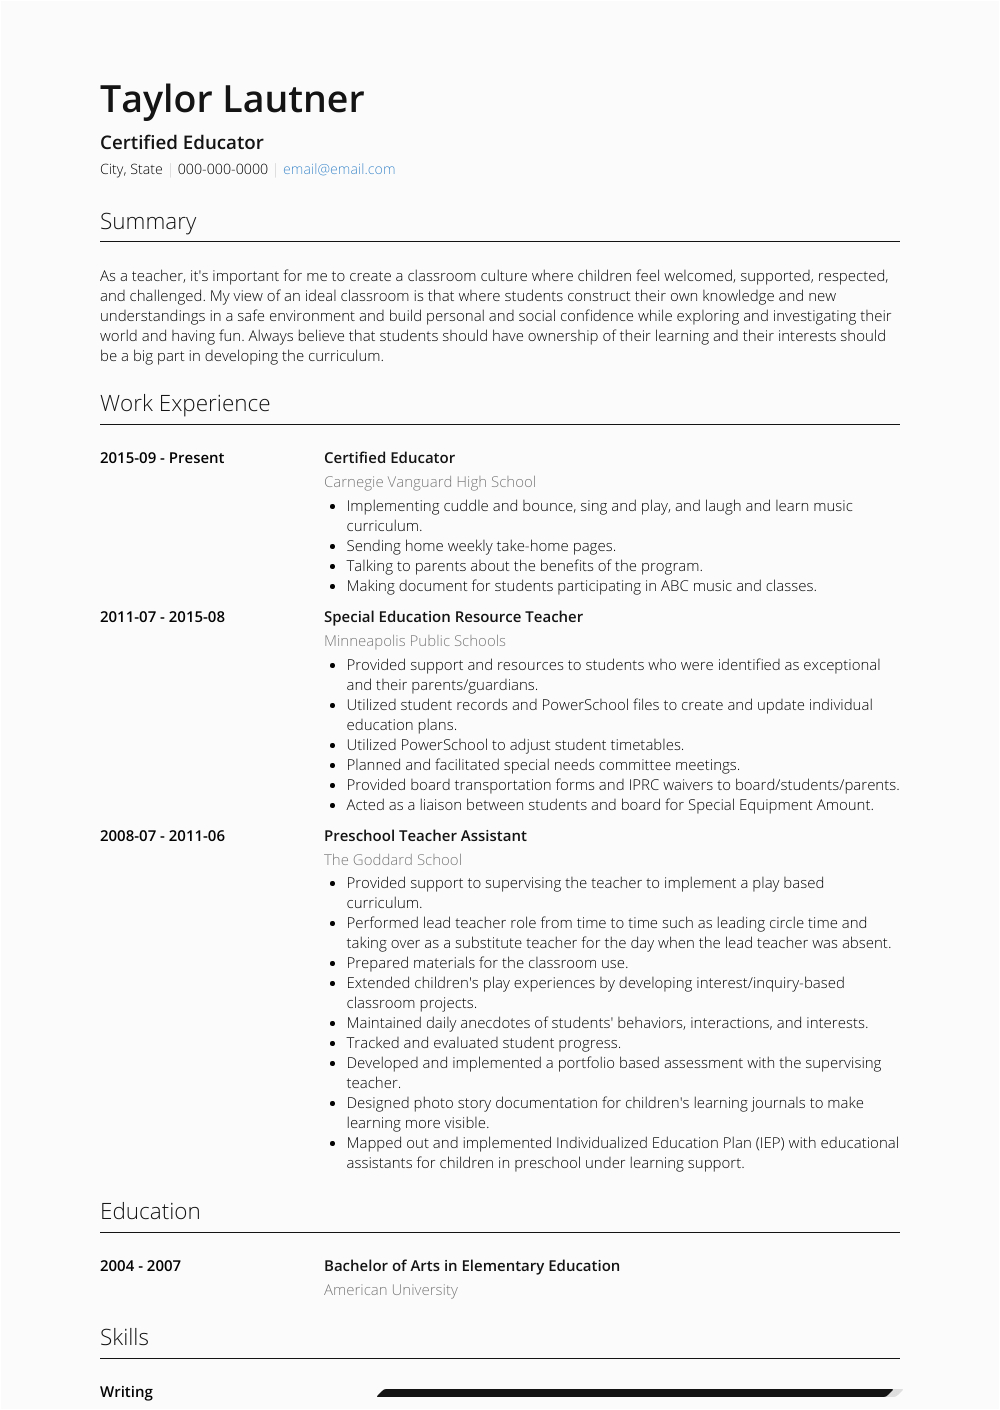 Sample Resume for Technology Educator Higher Education Educator Resume Samples and Templates